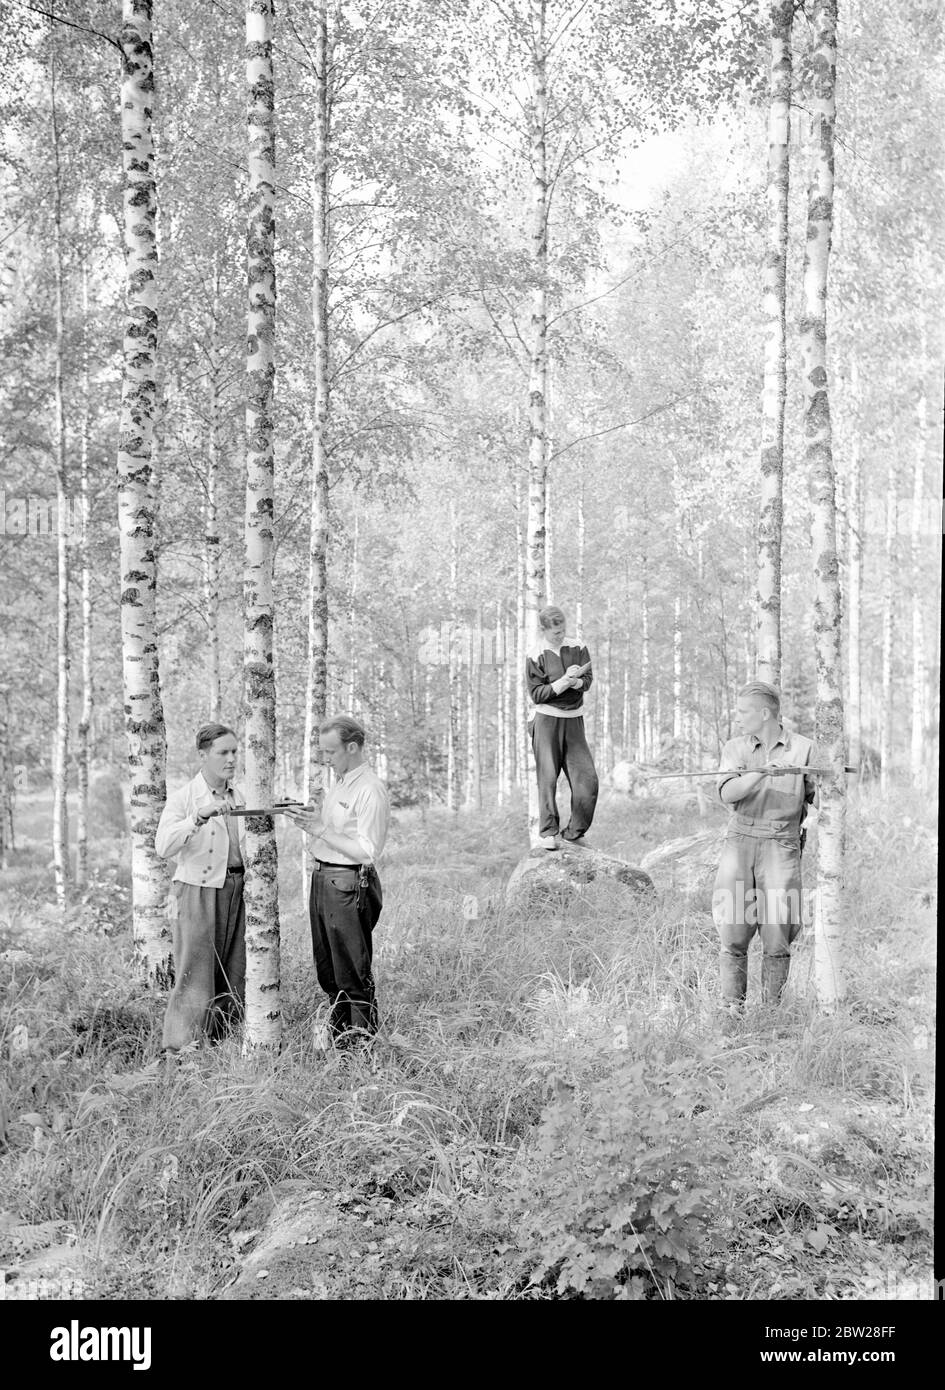 Die größten Förster der Welt. Finnland - Finnisches Alltagsleben Waldakademie Korkeakoski 1939 aus einer Serie Diese Männer bauten die Mannerheim-Linie - die finnische Zone der Grenzbefestigungen wurde vollständig von der finnischen Bevölkerung entworfen und gebaut. Finnische Ingenieure begannen die Arbeit auf der Linie im Jahr 1937, aber es war nicht bis in diesem Sommer im Jahr 1939, dass die Arbeiten beschleunigt und abgeschlossen. Dann, im Bewusstsein der Gefahren einer schwachen Grenze, gaben junge finnische Männer und Studenten ihre Sommerferien auf, um freiwillig beim Bau von Panzerfallen und Befestigungsanlagen zu helfen. Stockfoto